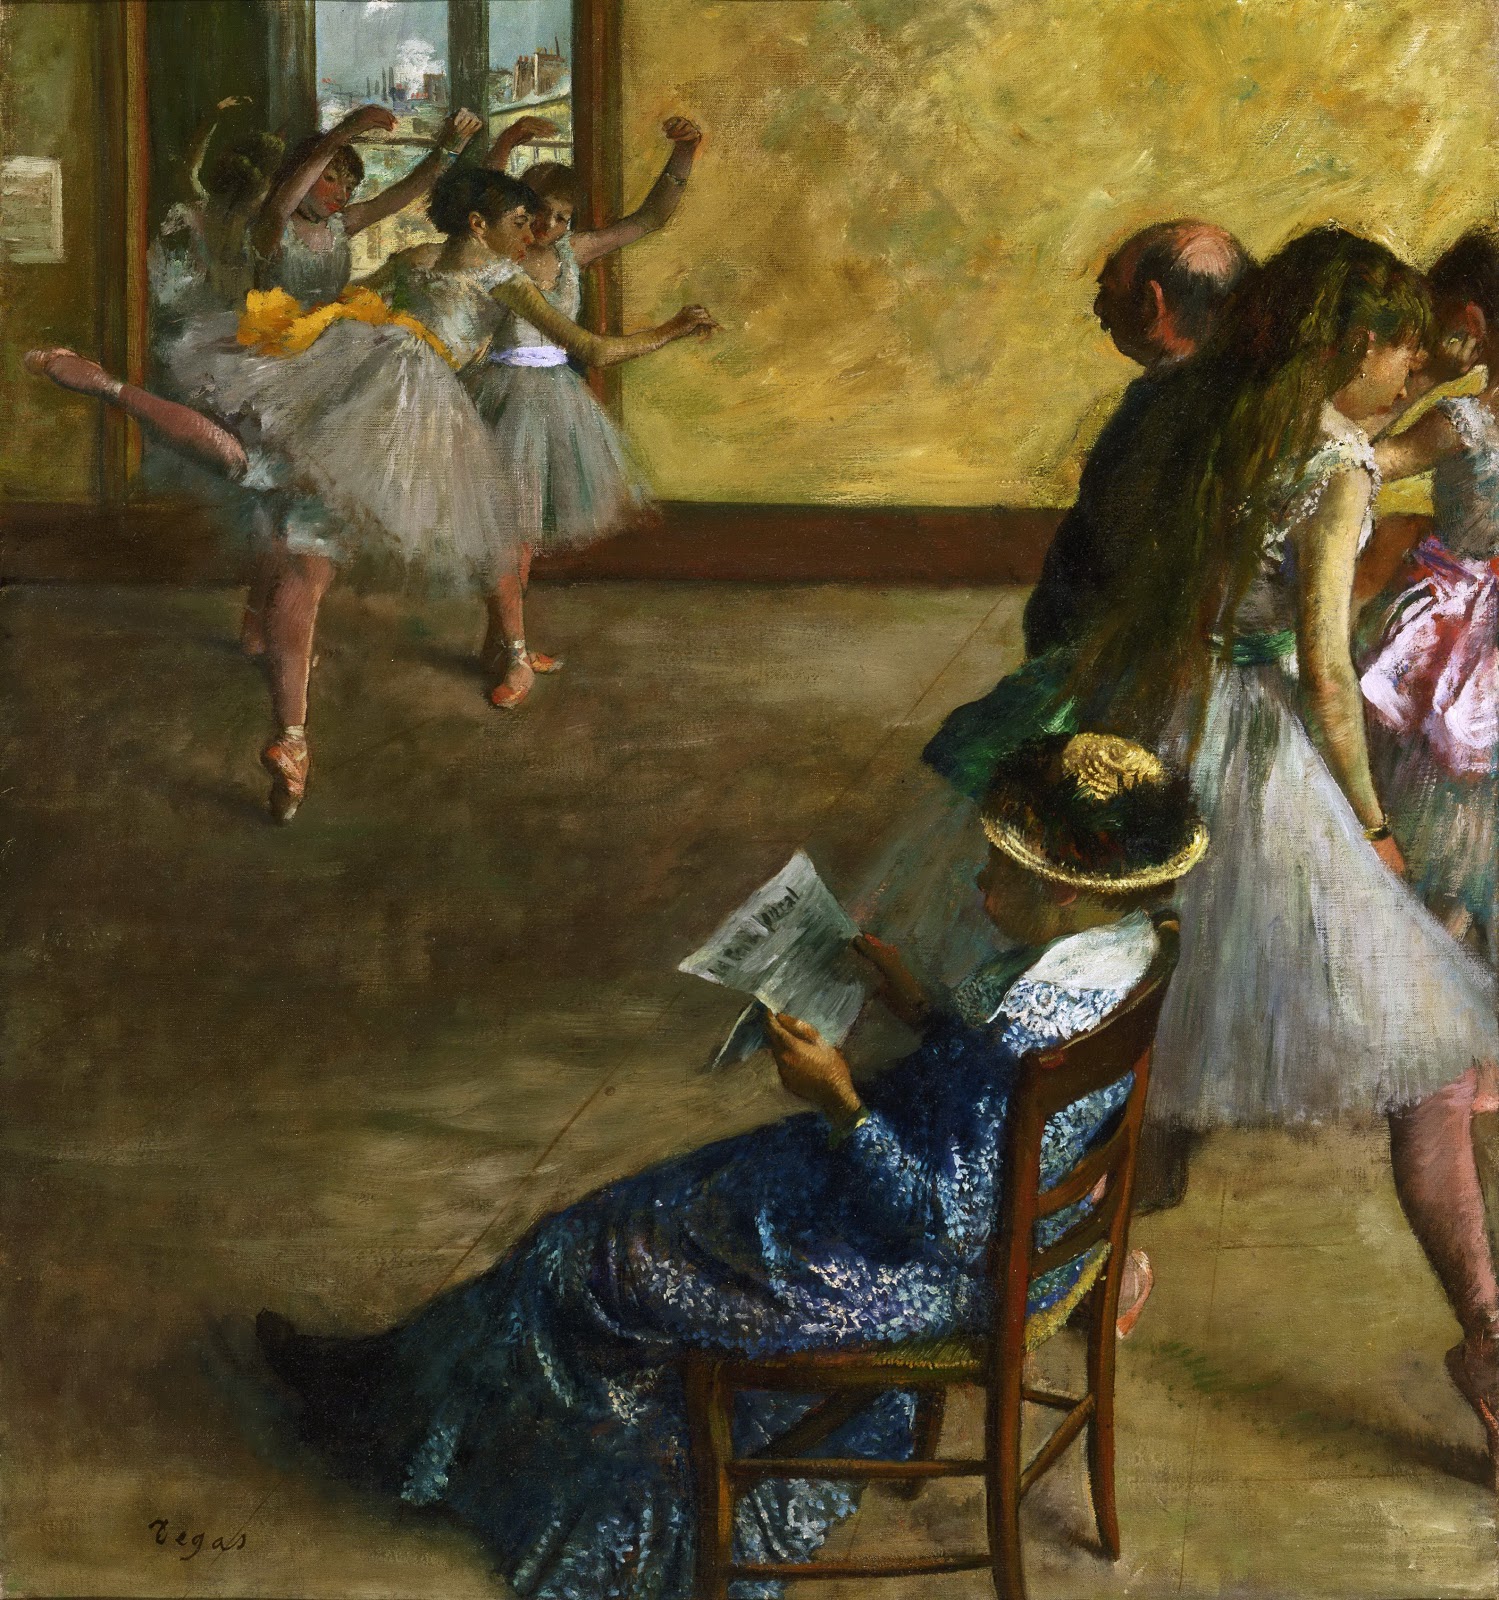 Edgar+Degas-1834-1917 (870).jpg